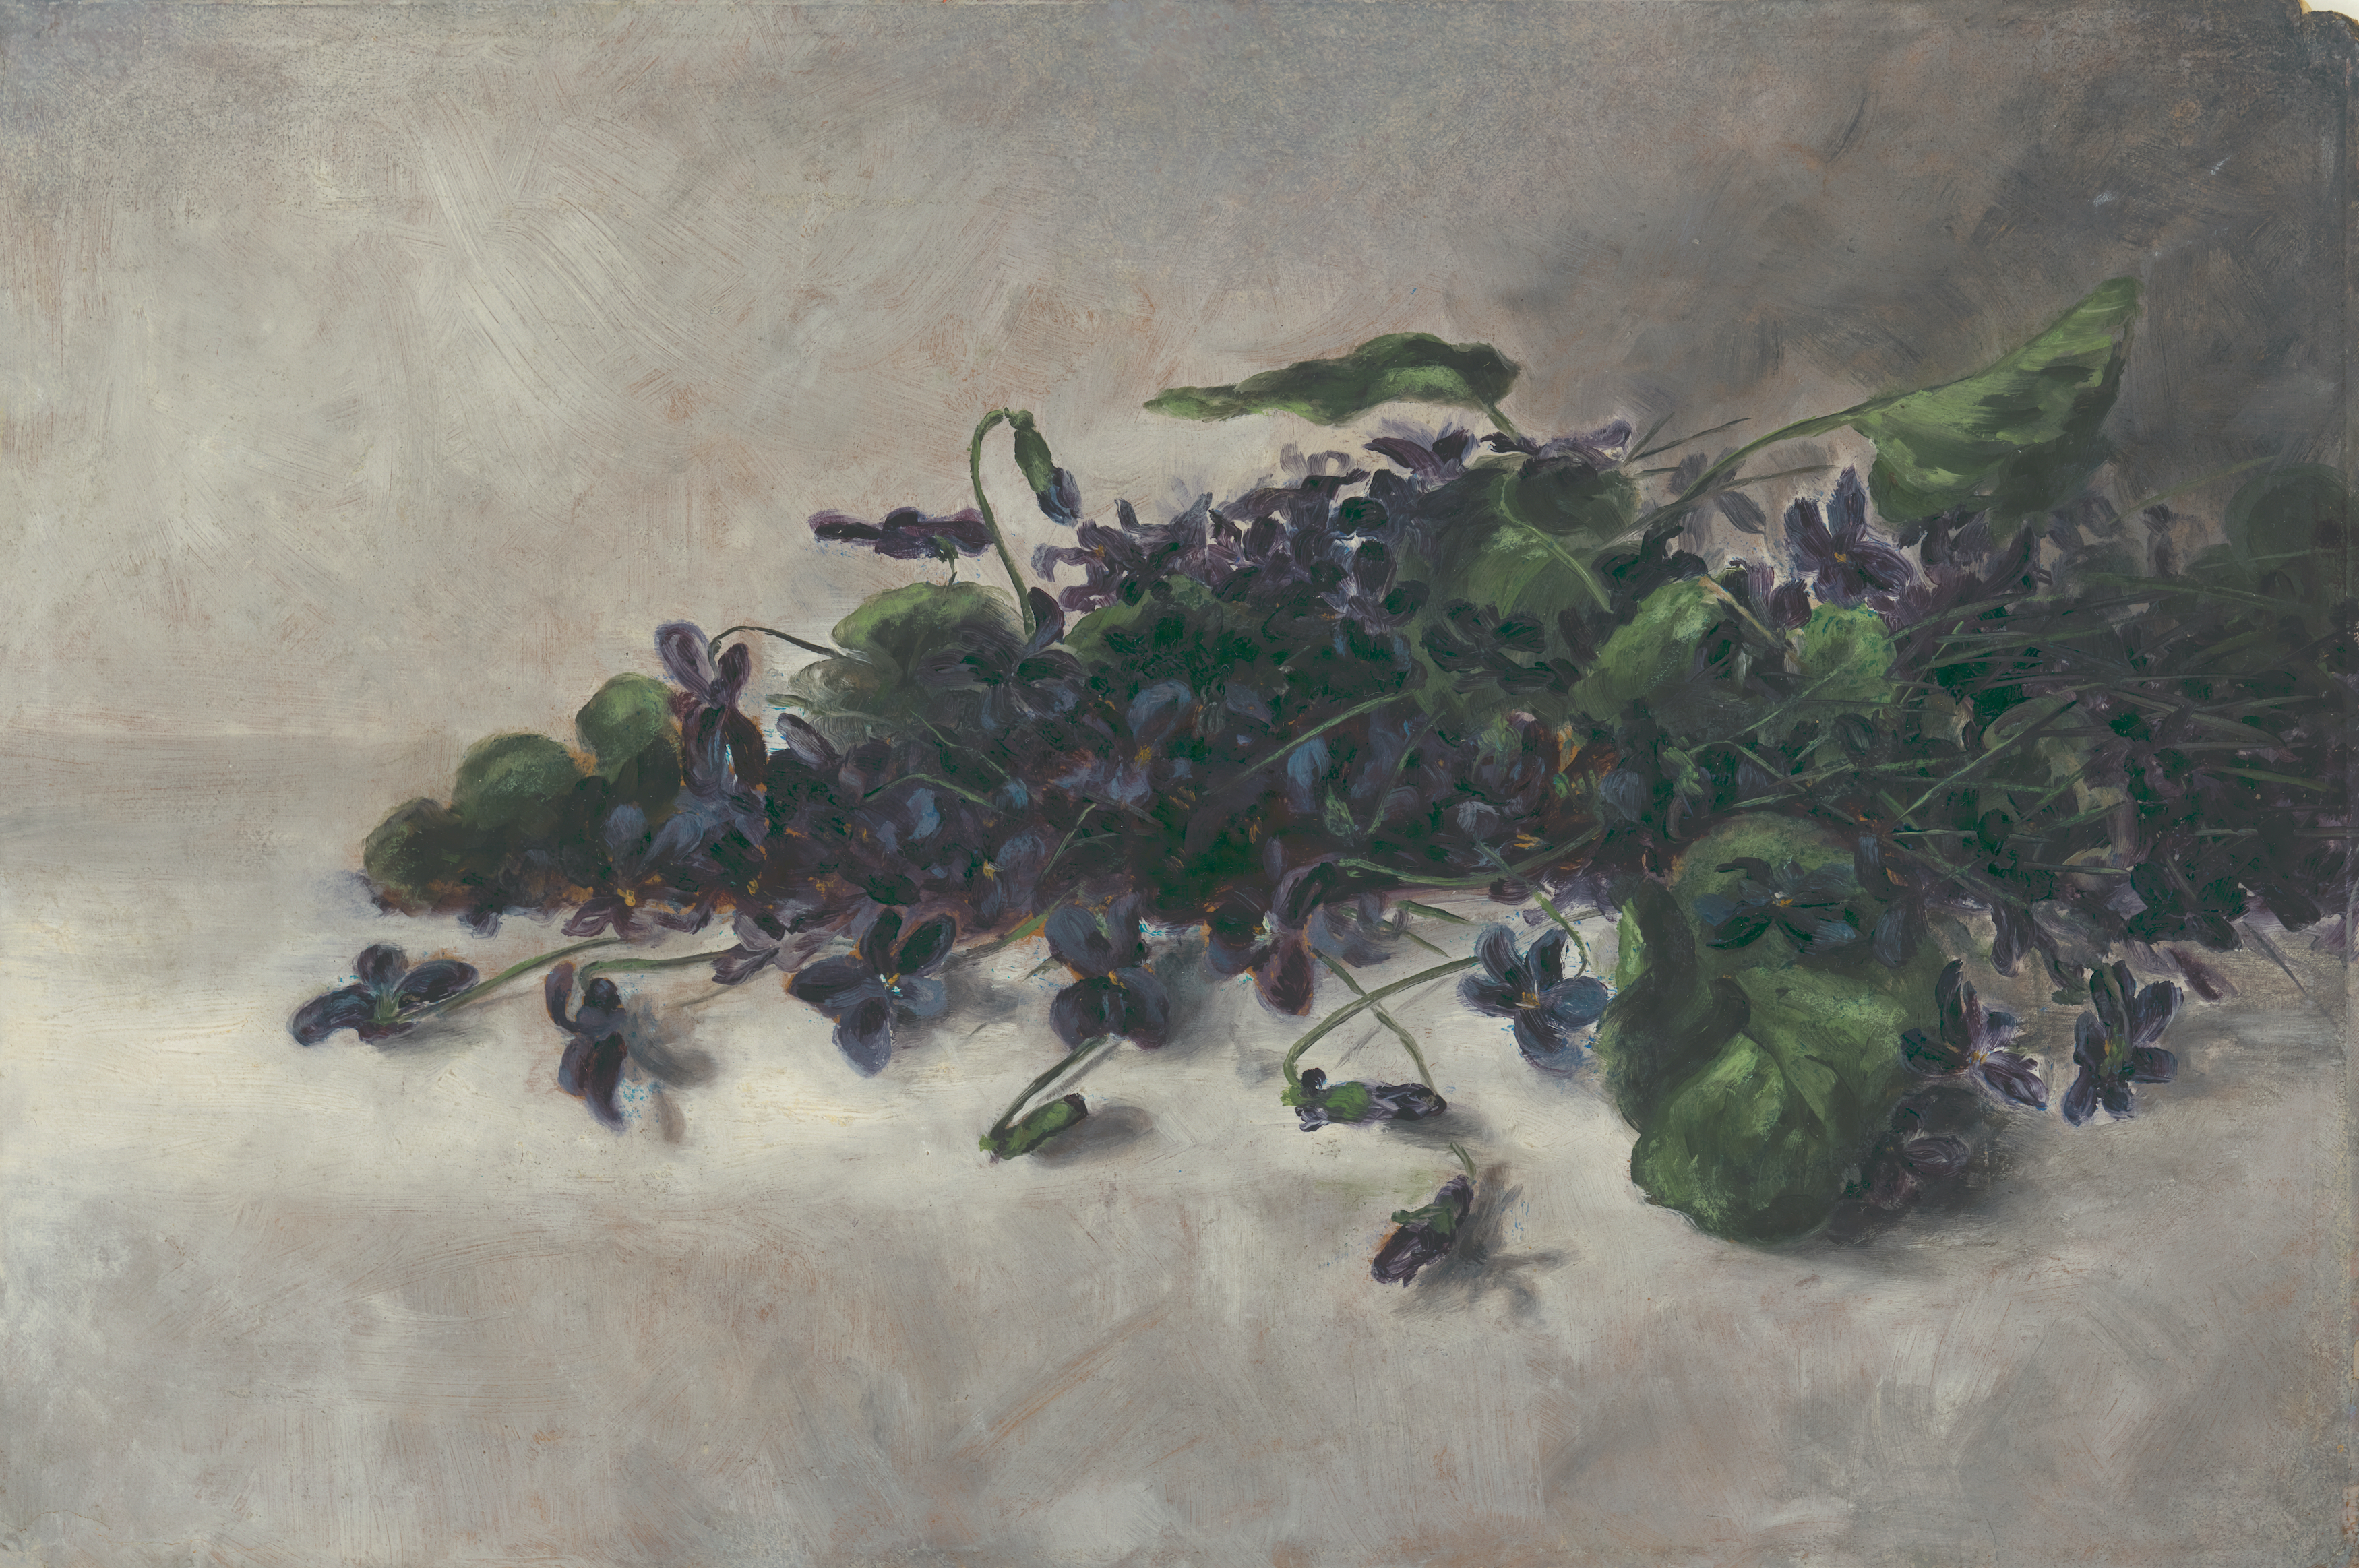 スミレ by Pauline Powell Burns - 1890年頃 - 27.3 × 31.4 cm 